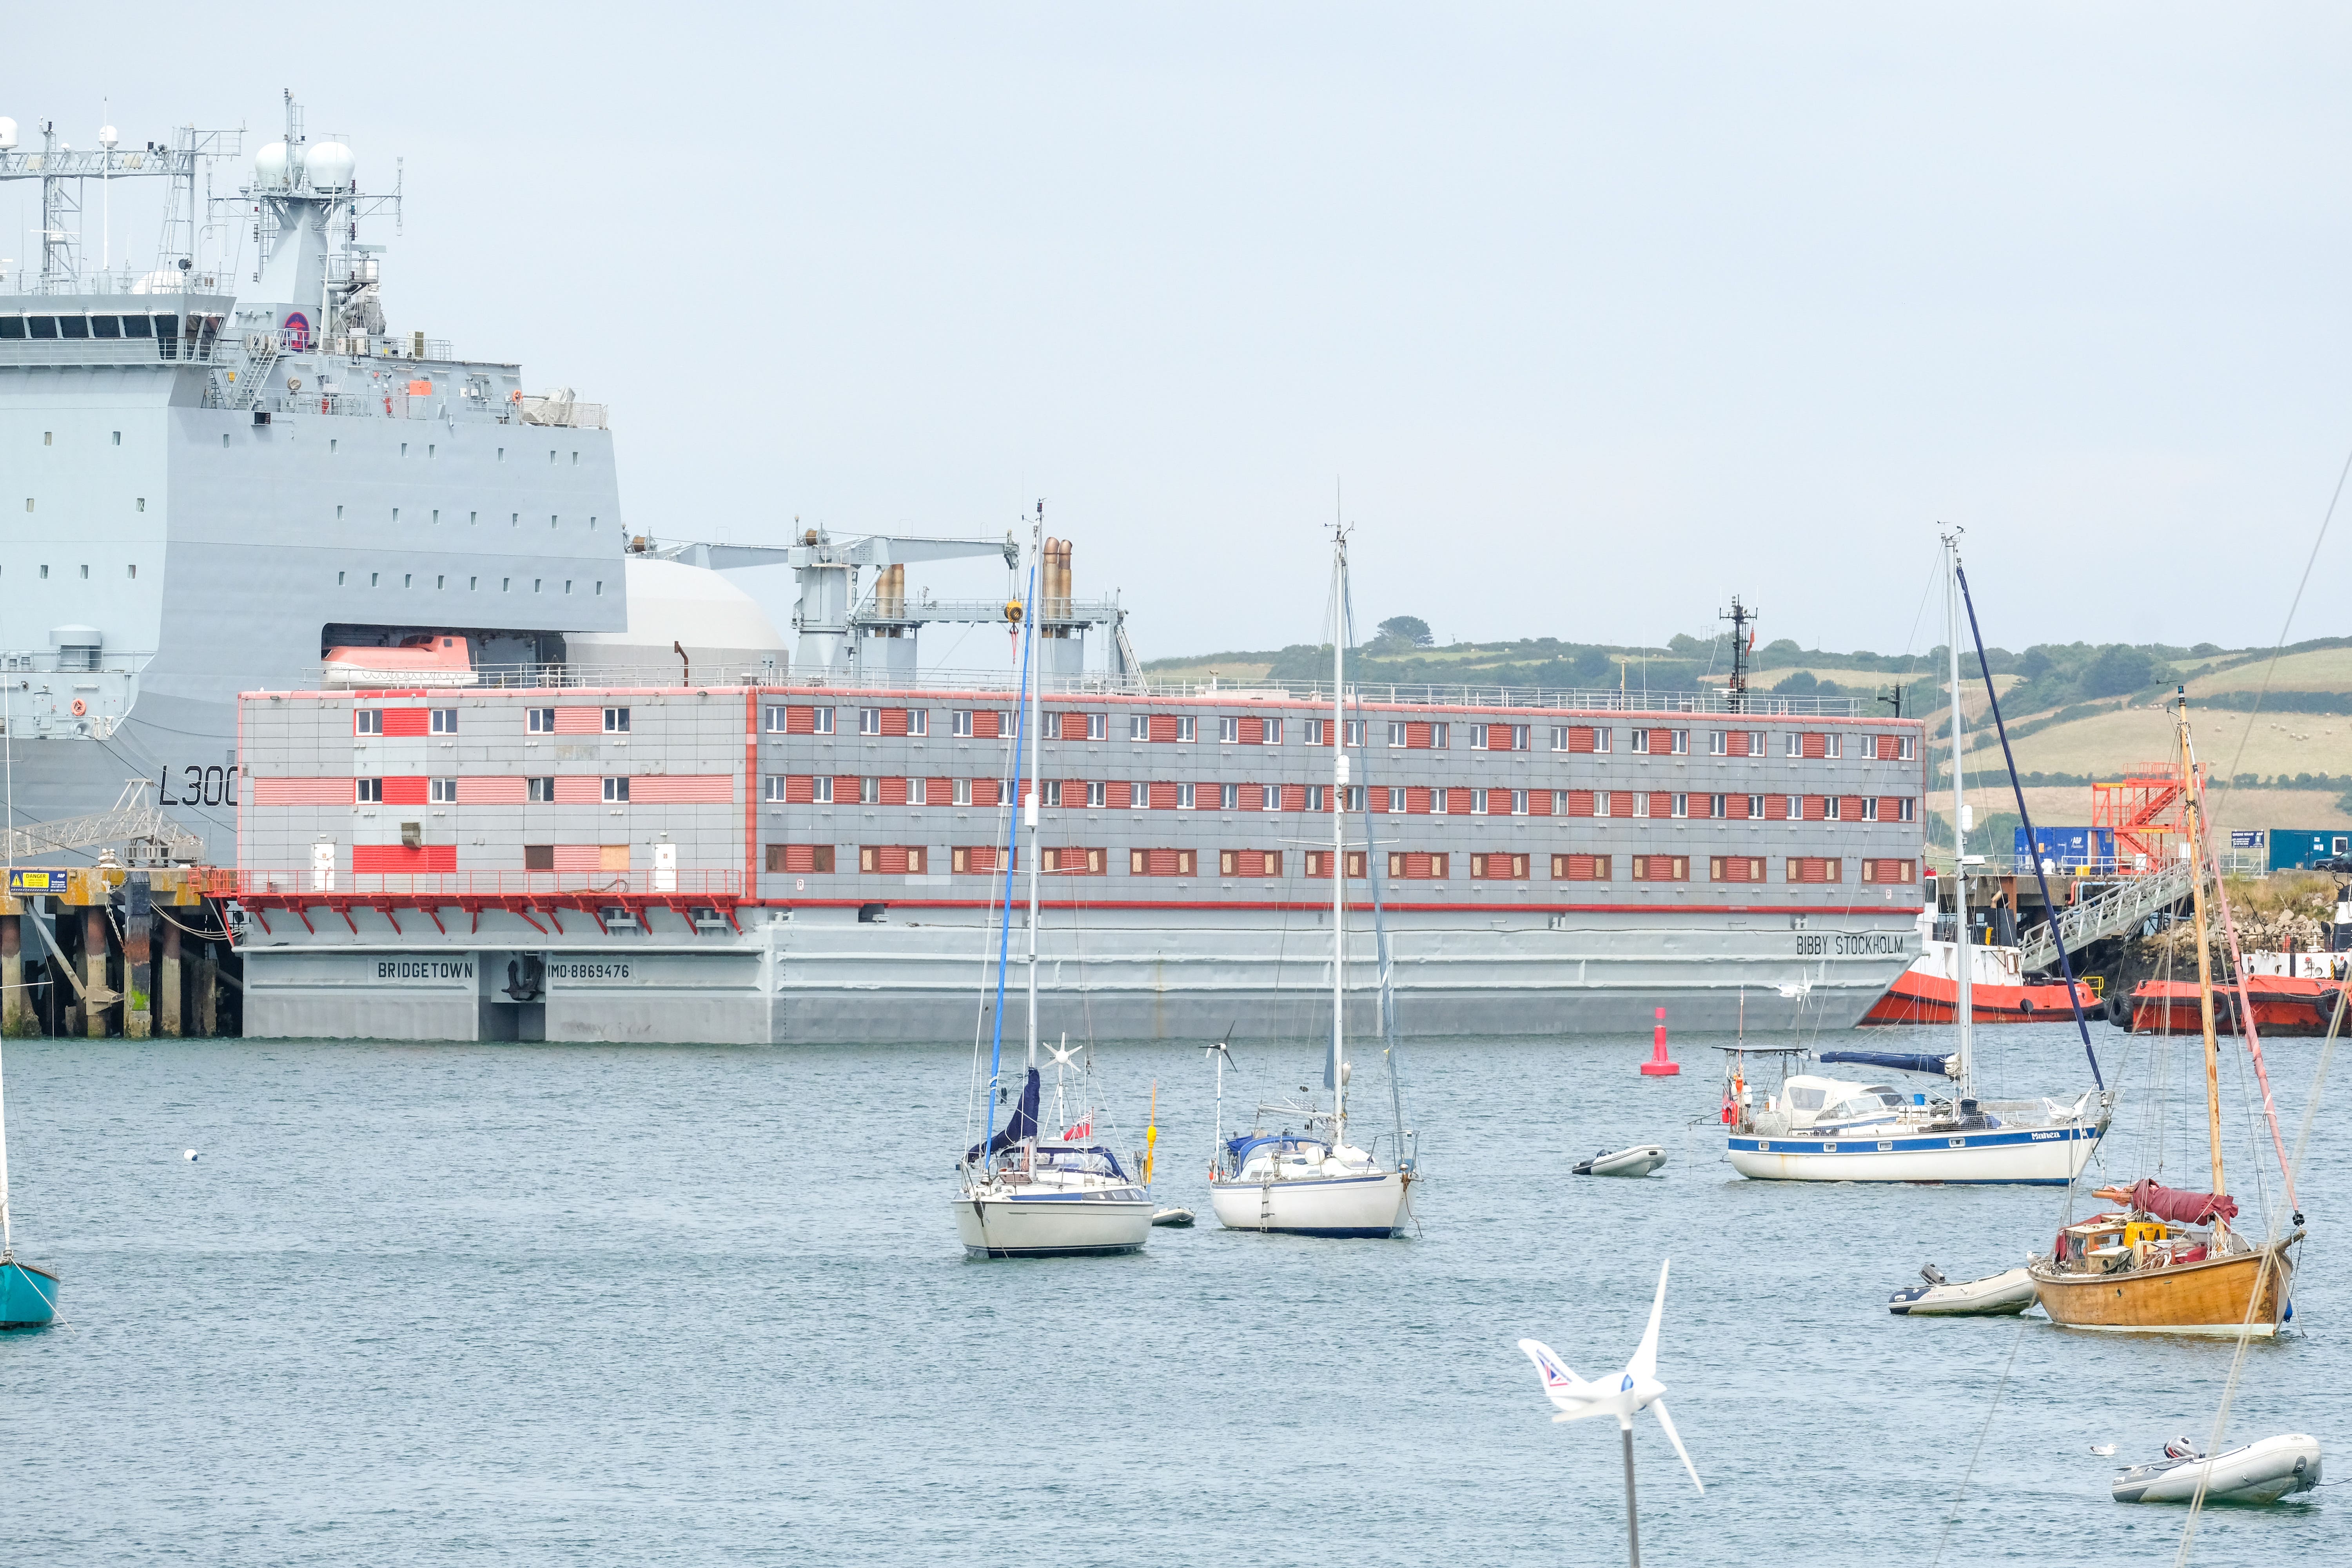 Bibby Stockholm barge left Falmouth docks for Portland on Monday